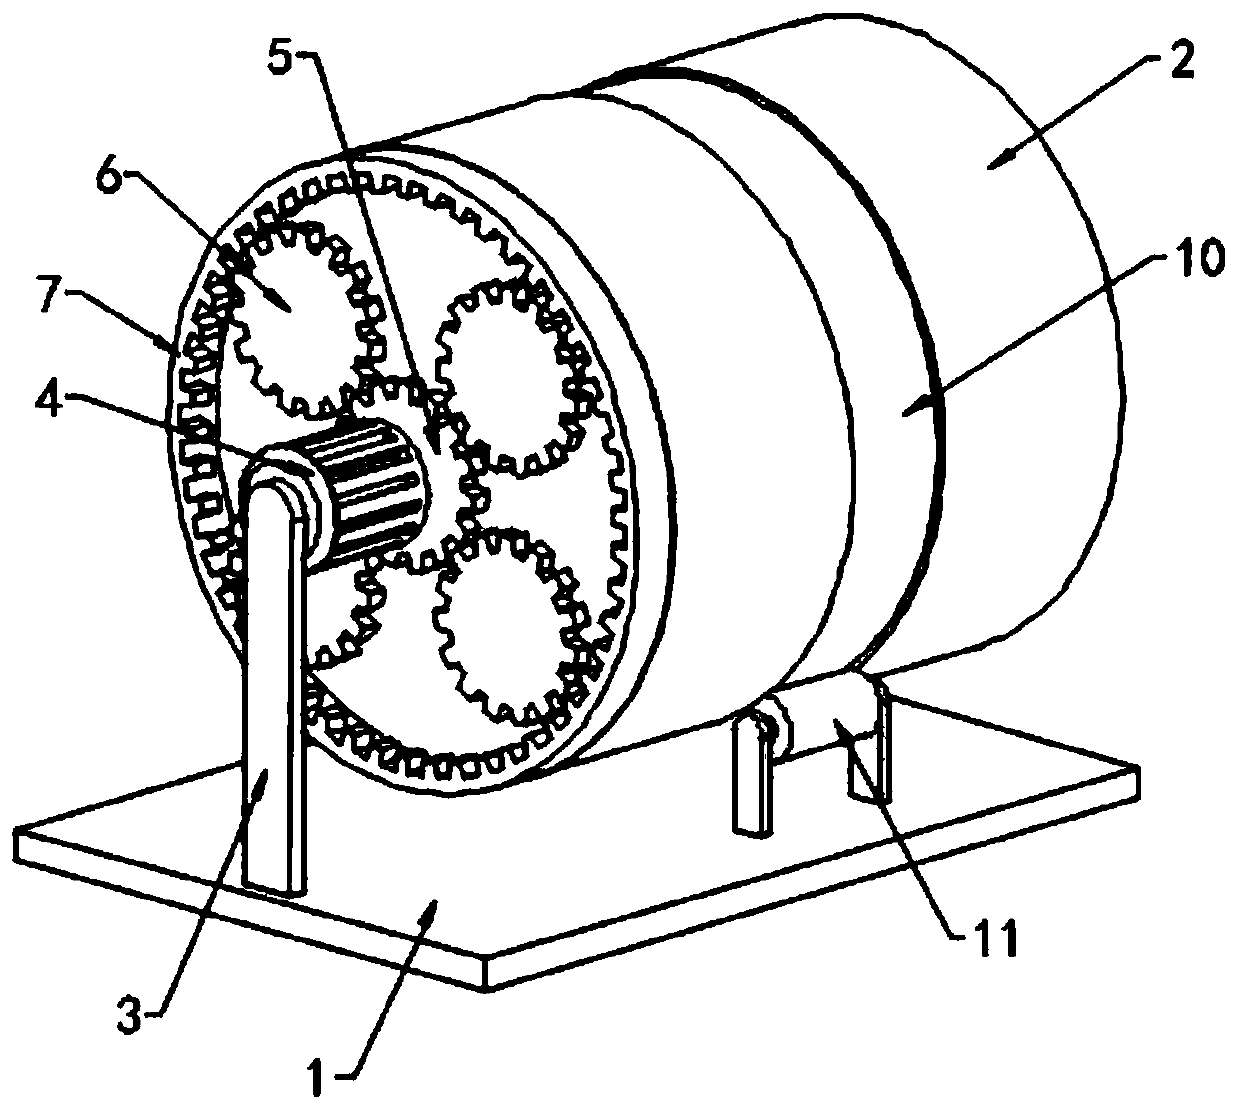 Engaged rotary crushing machine for rice